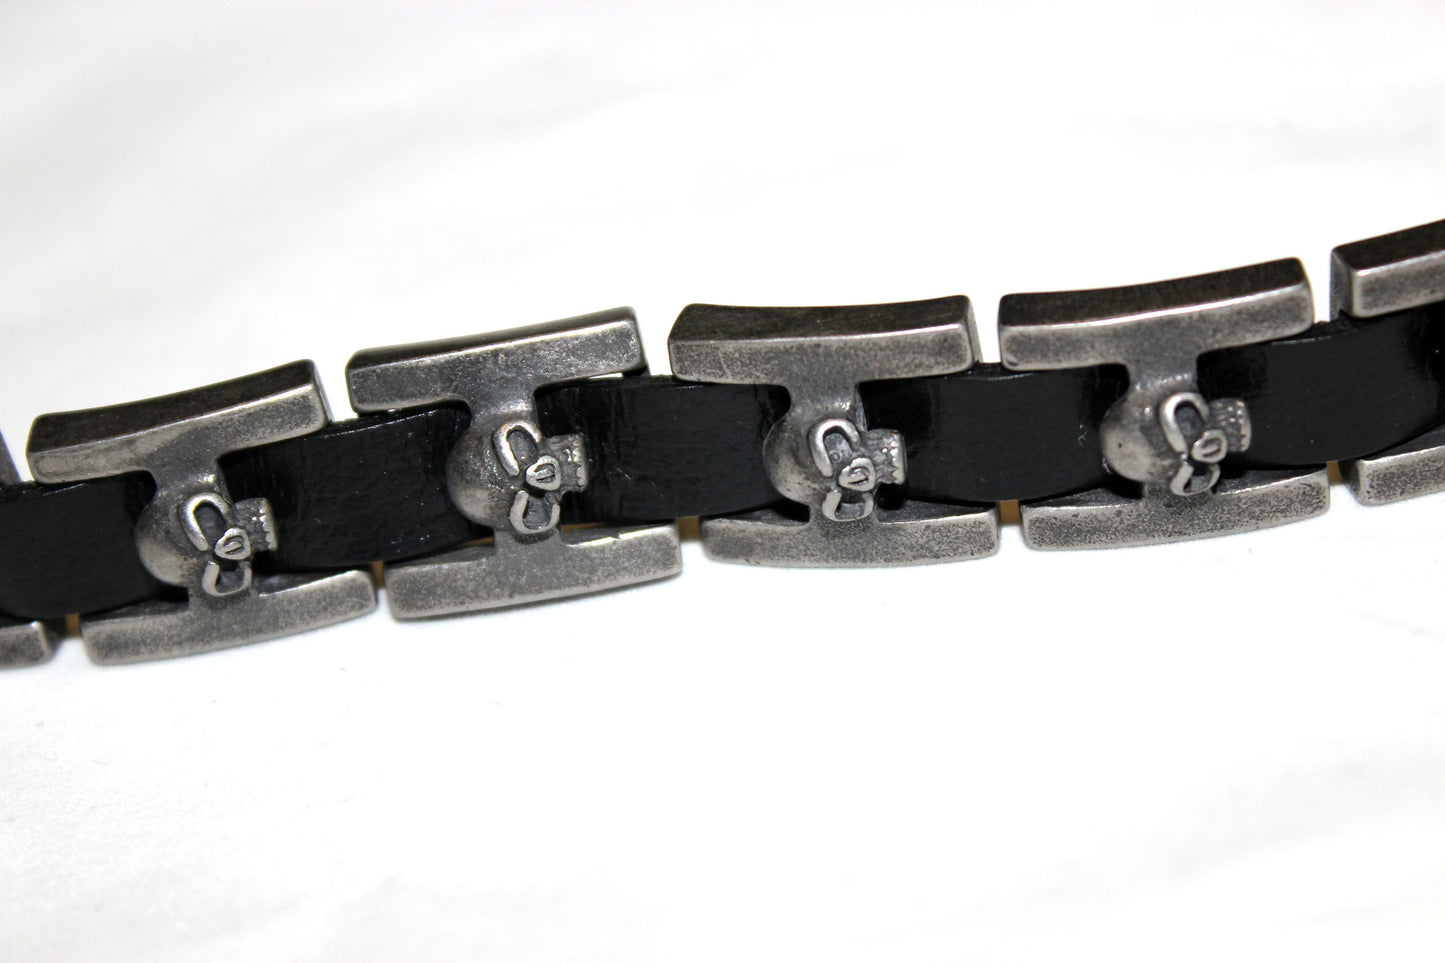 Stainless Steel Skull Link Leather Bracelet- UDINC0459